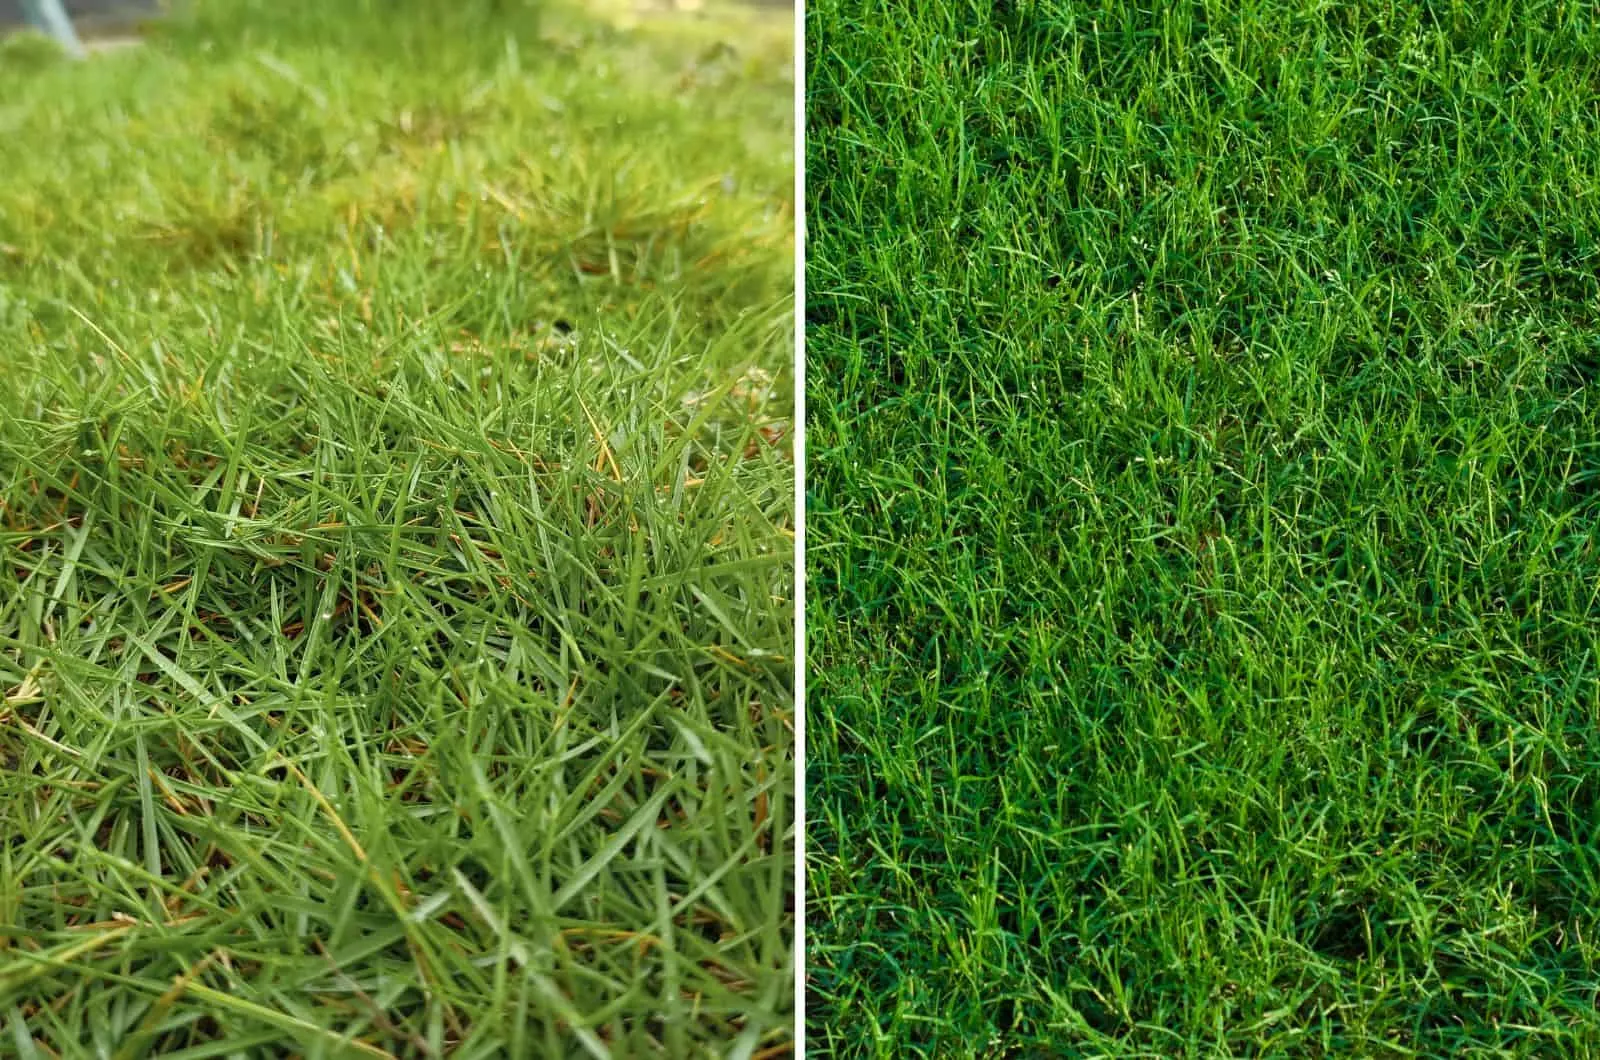 Zoysia and Bermuda grass